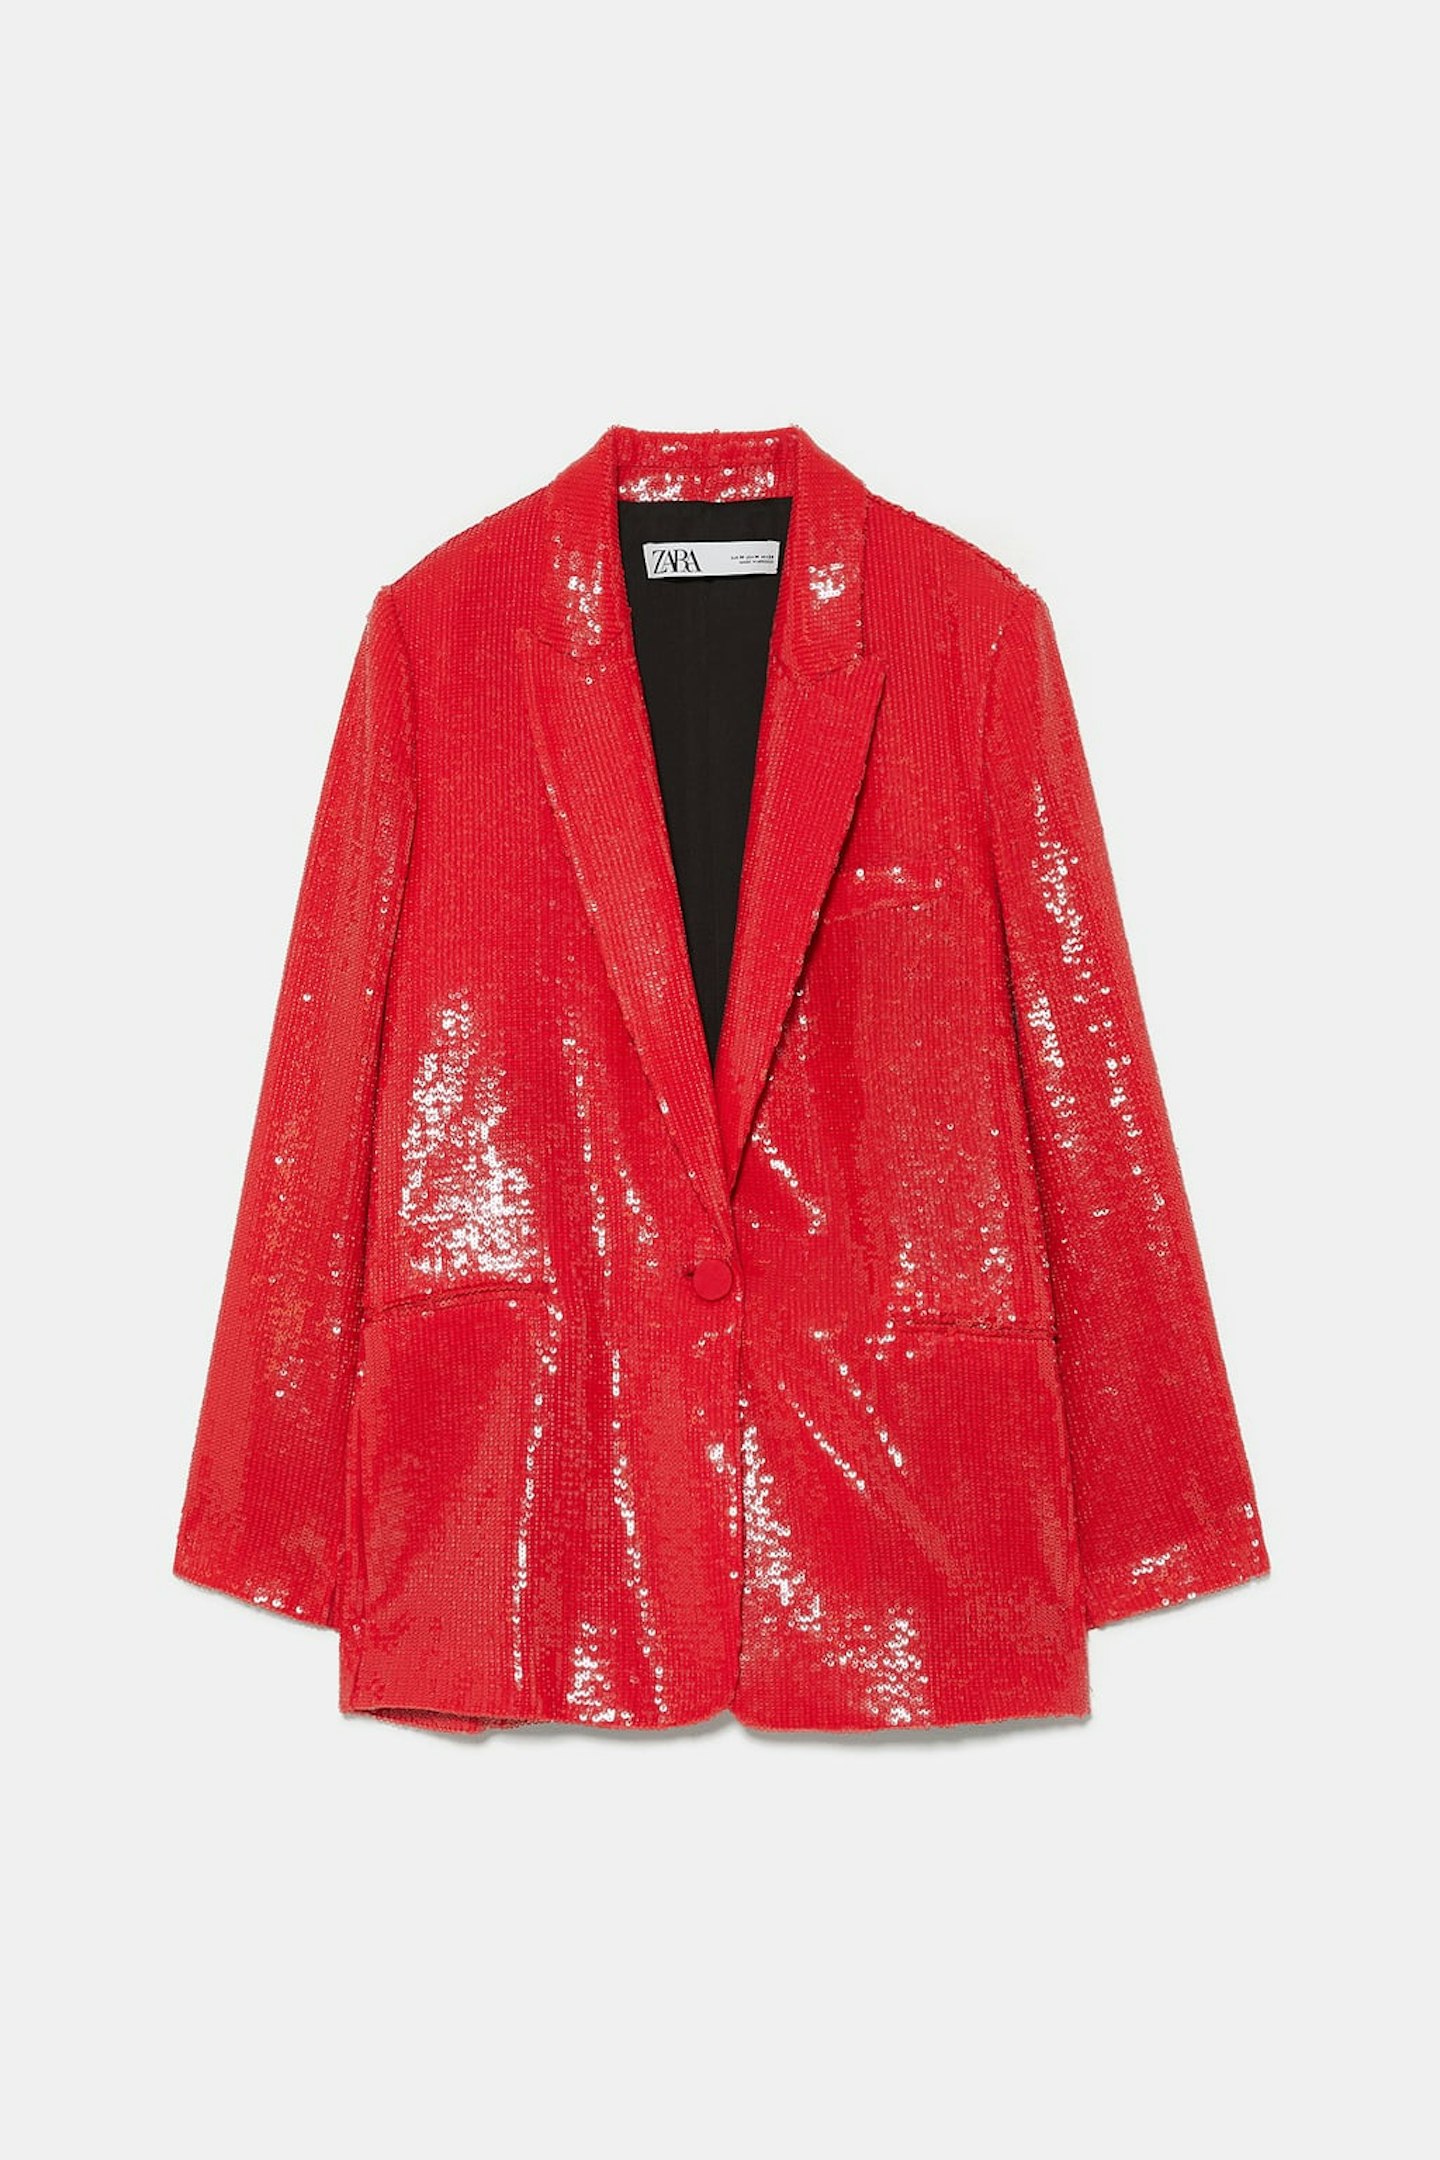 Zara, Sequin Blazer, £89.99